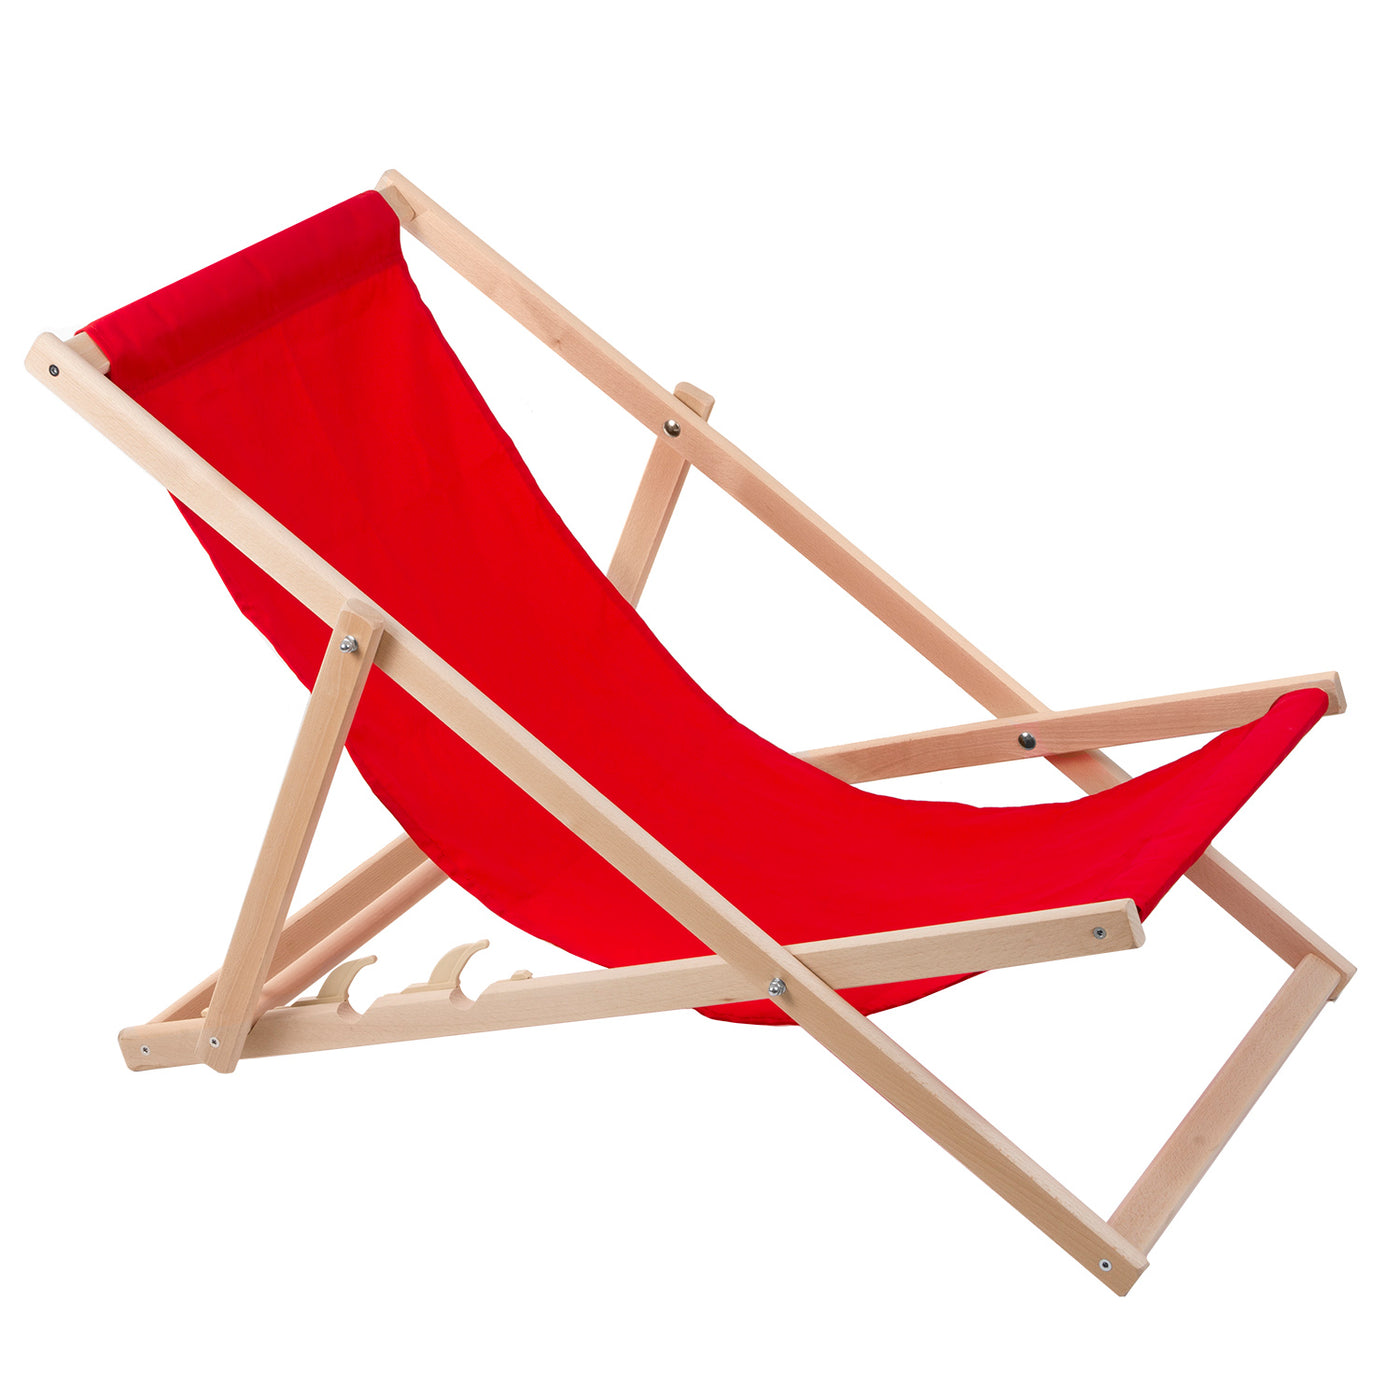 2 komfortowe leżaki z drewna, czerwone, idealne na plażę, balkon, taras